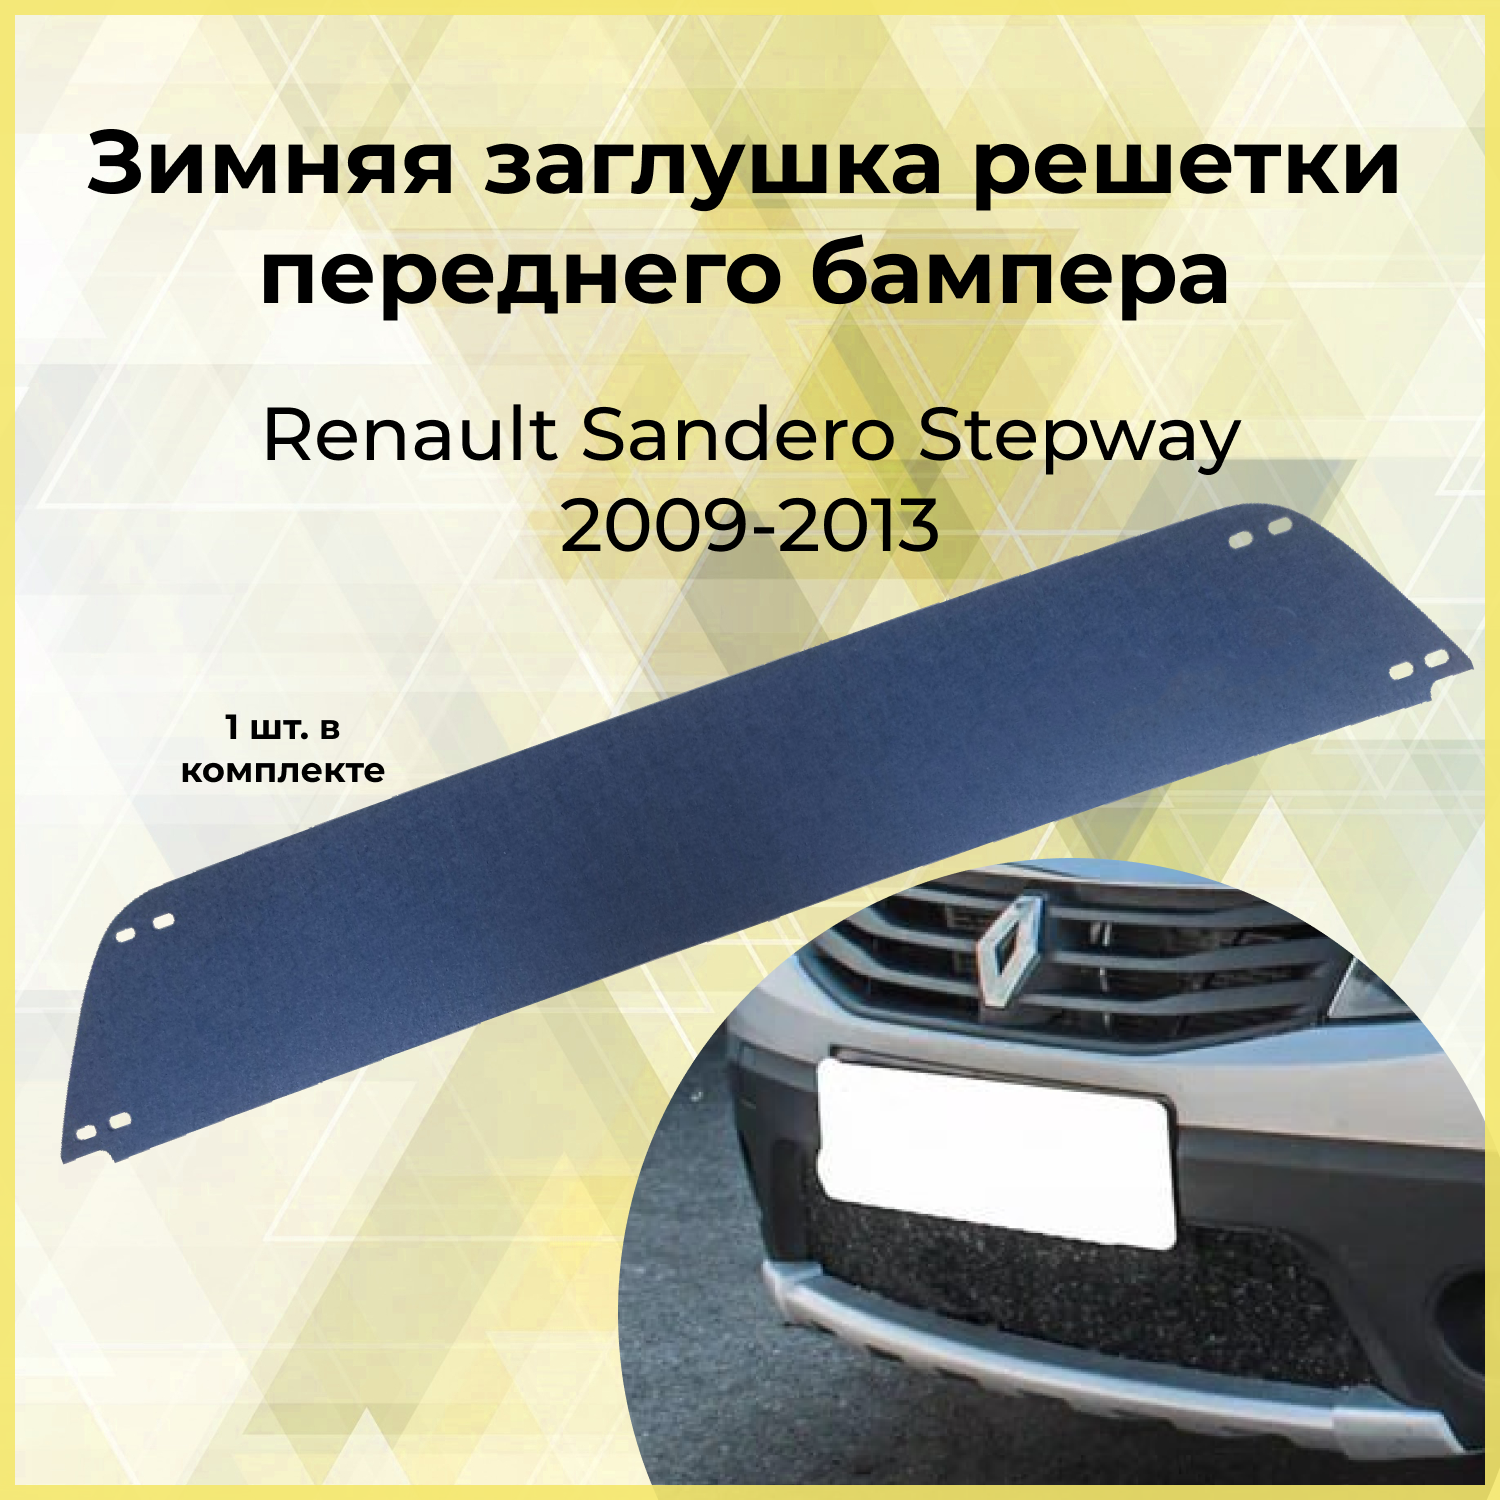 Зимняя заглушка решетки переднего бампера Renault Sandero Stepway 2009-2013